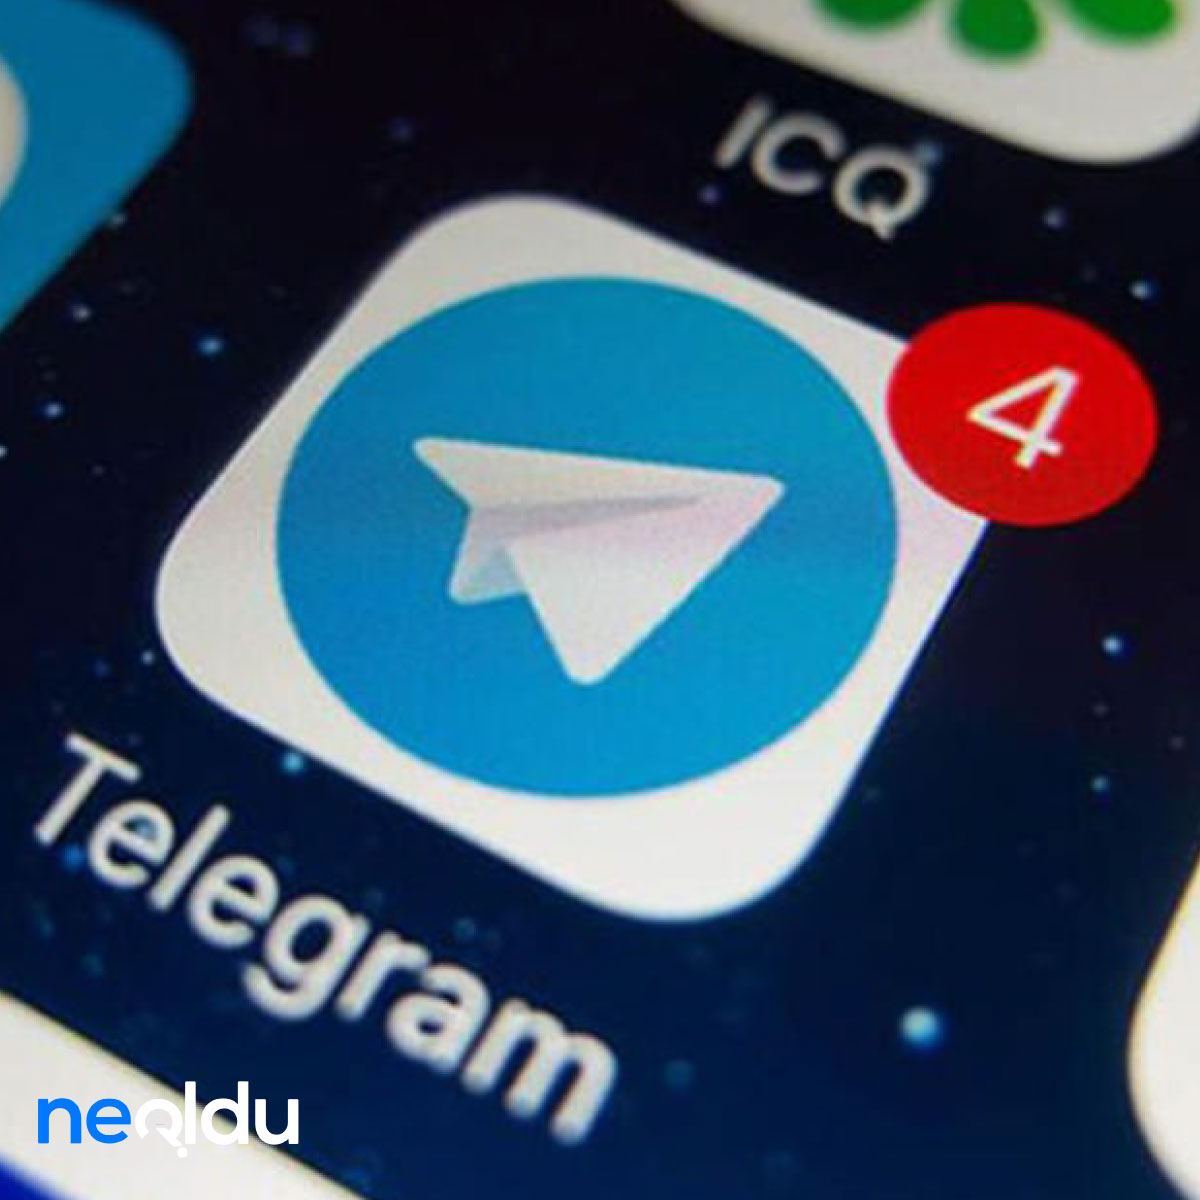 Telegram Nedir? Telegram Nasıl Kullanılır?